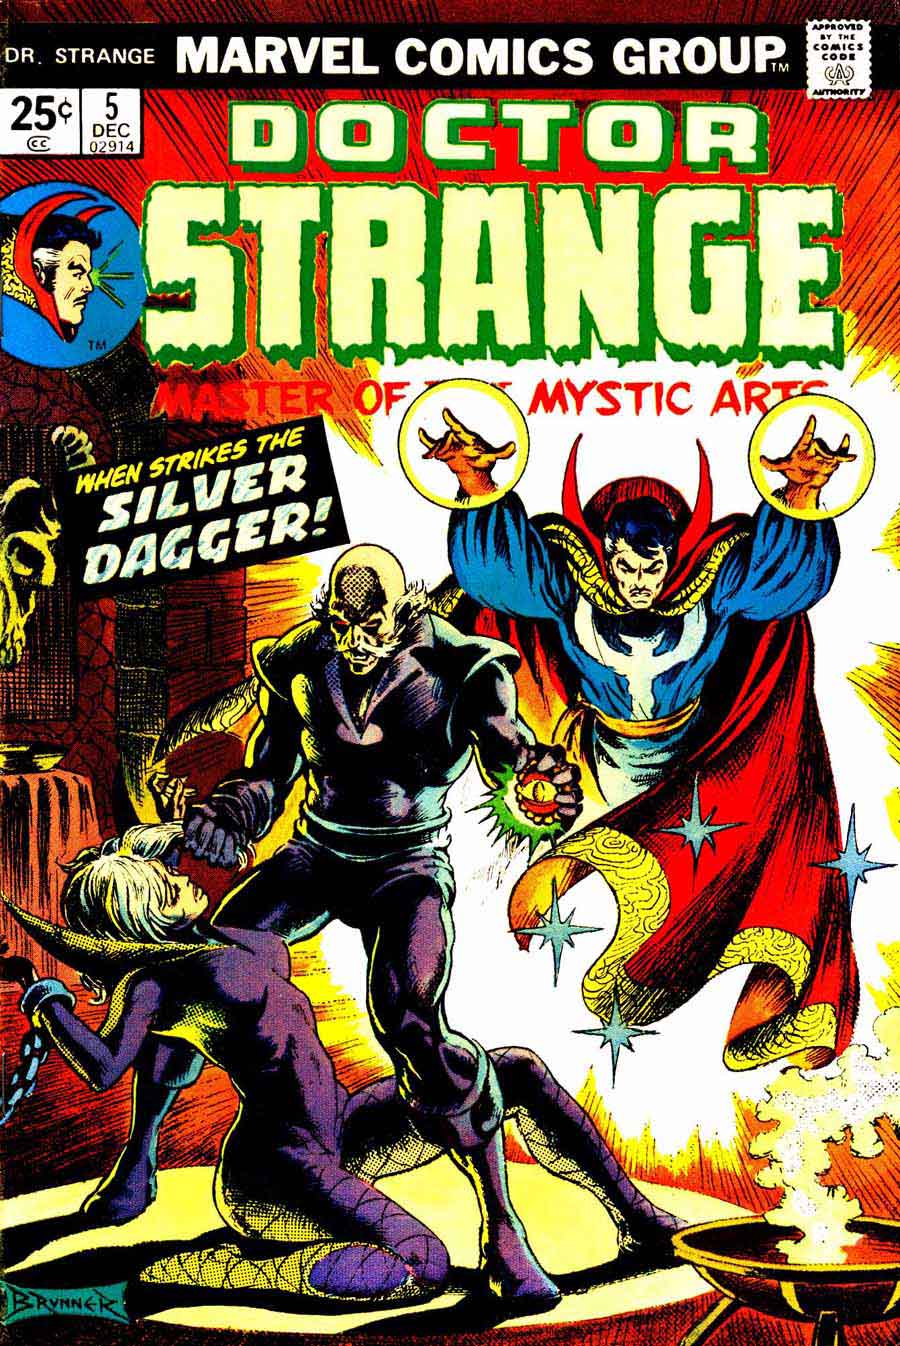 Frank Brunner  bronze age 1970s marvel comic book cover art - Doctor Strange v2 #5